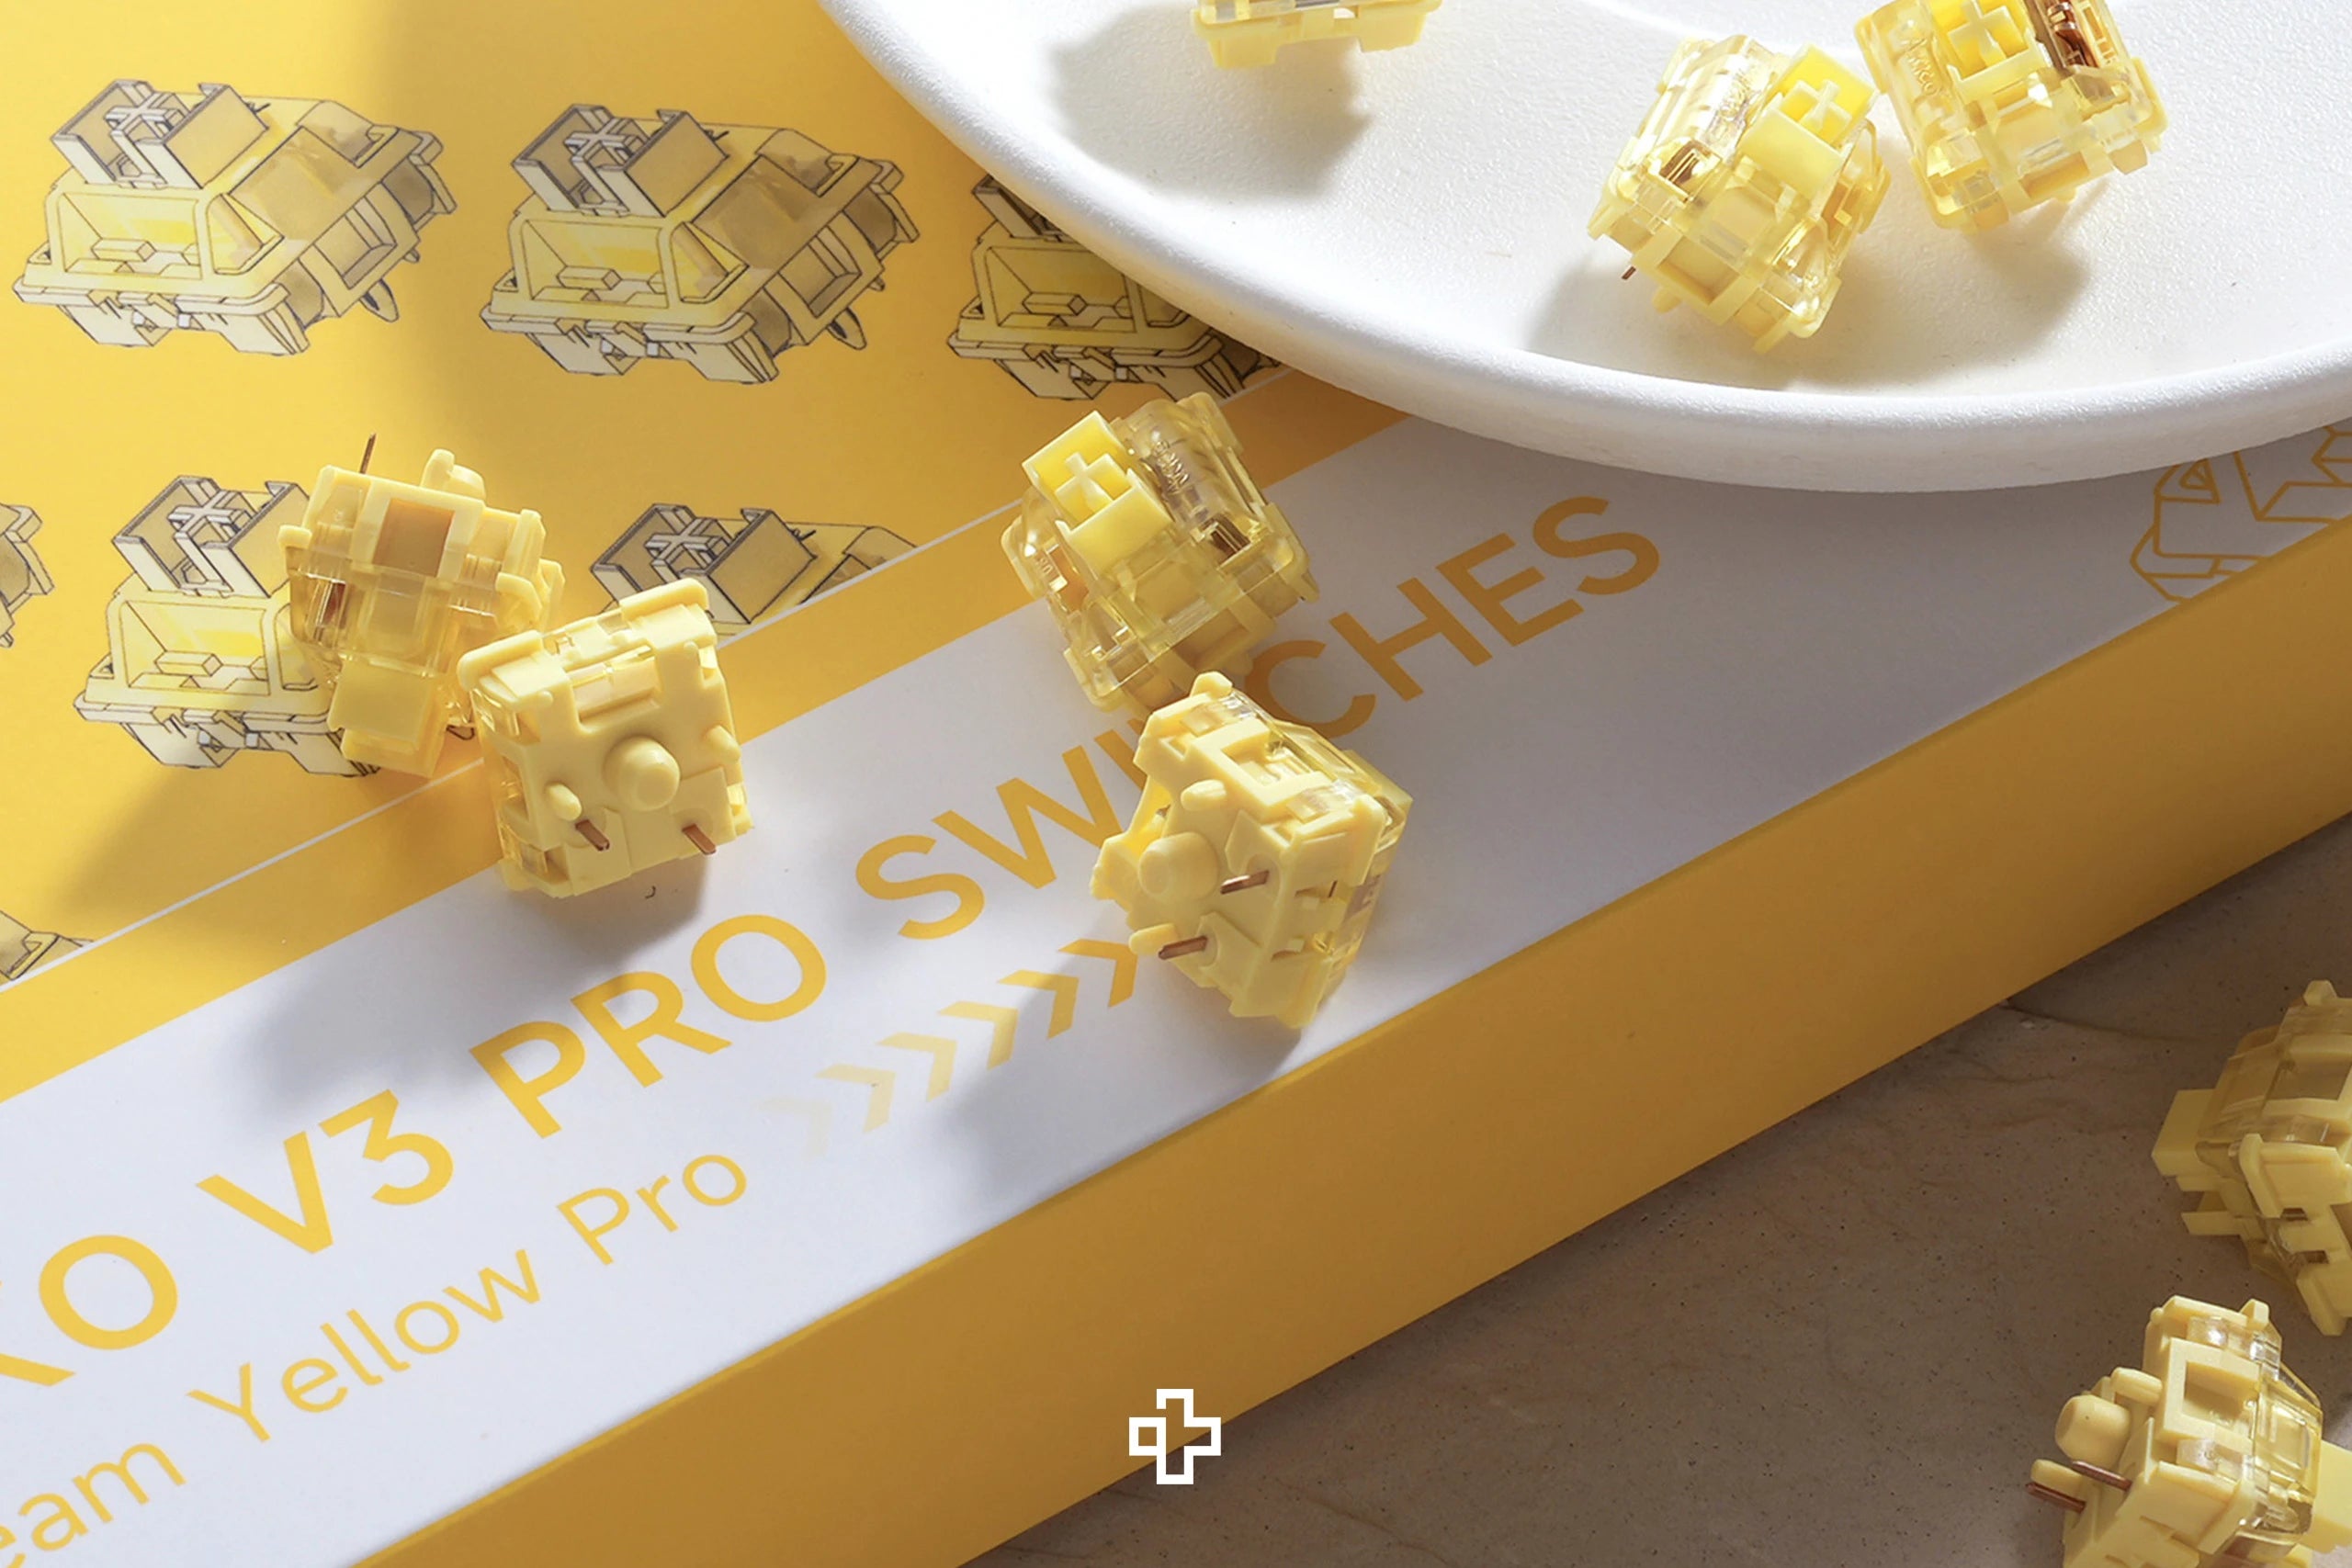 45 db Cream Yellow Pro Akko Switches